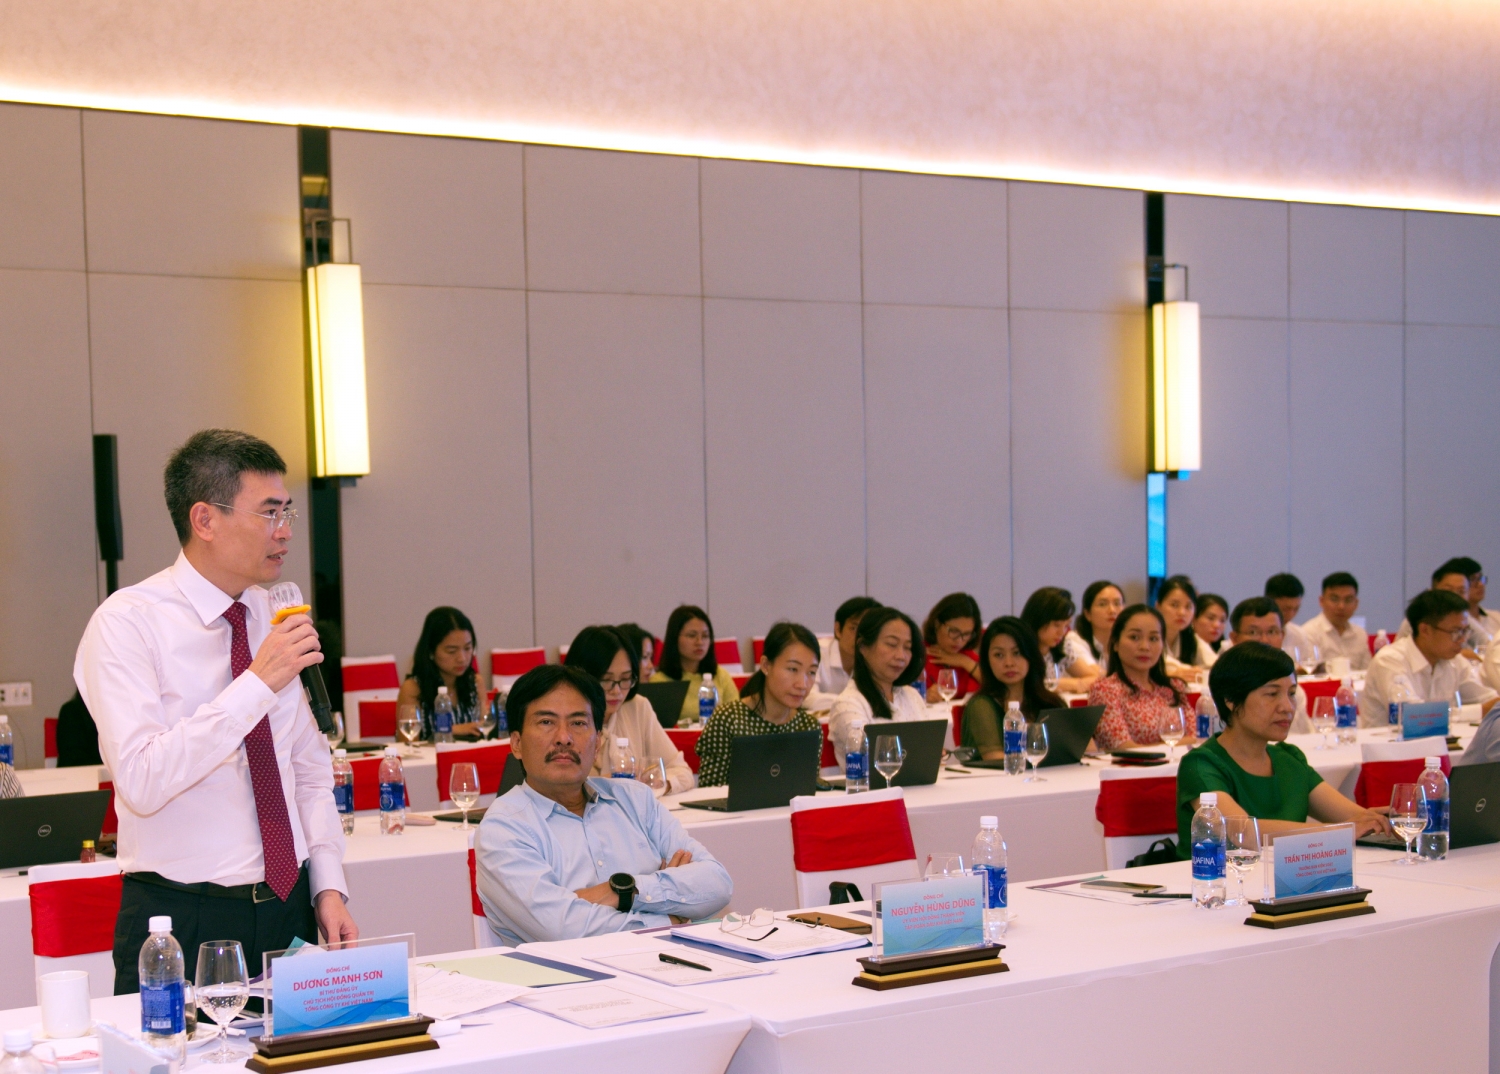 Ông Dương Mạnh Sơn – Chủ tịch HĐQT PV GAS đánh giá cao những kết quả đã đạt được trong thời gian qua của bộ phận Tài chính Kế toán PV GAS